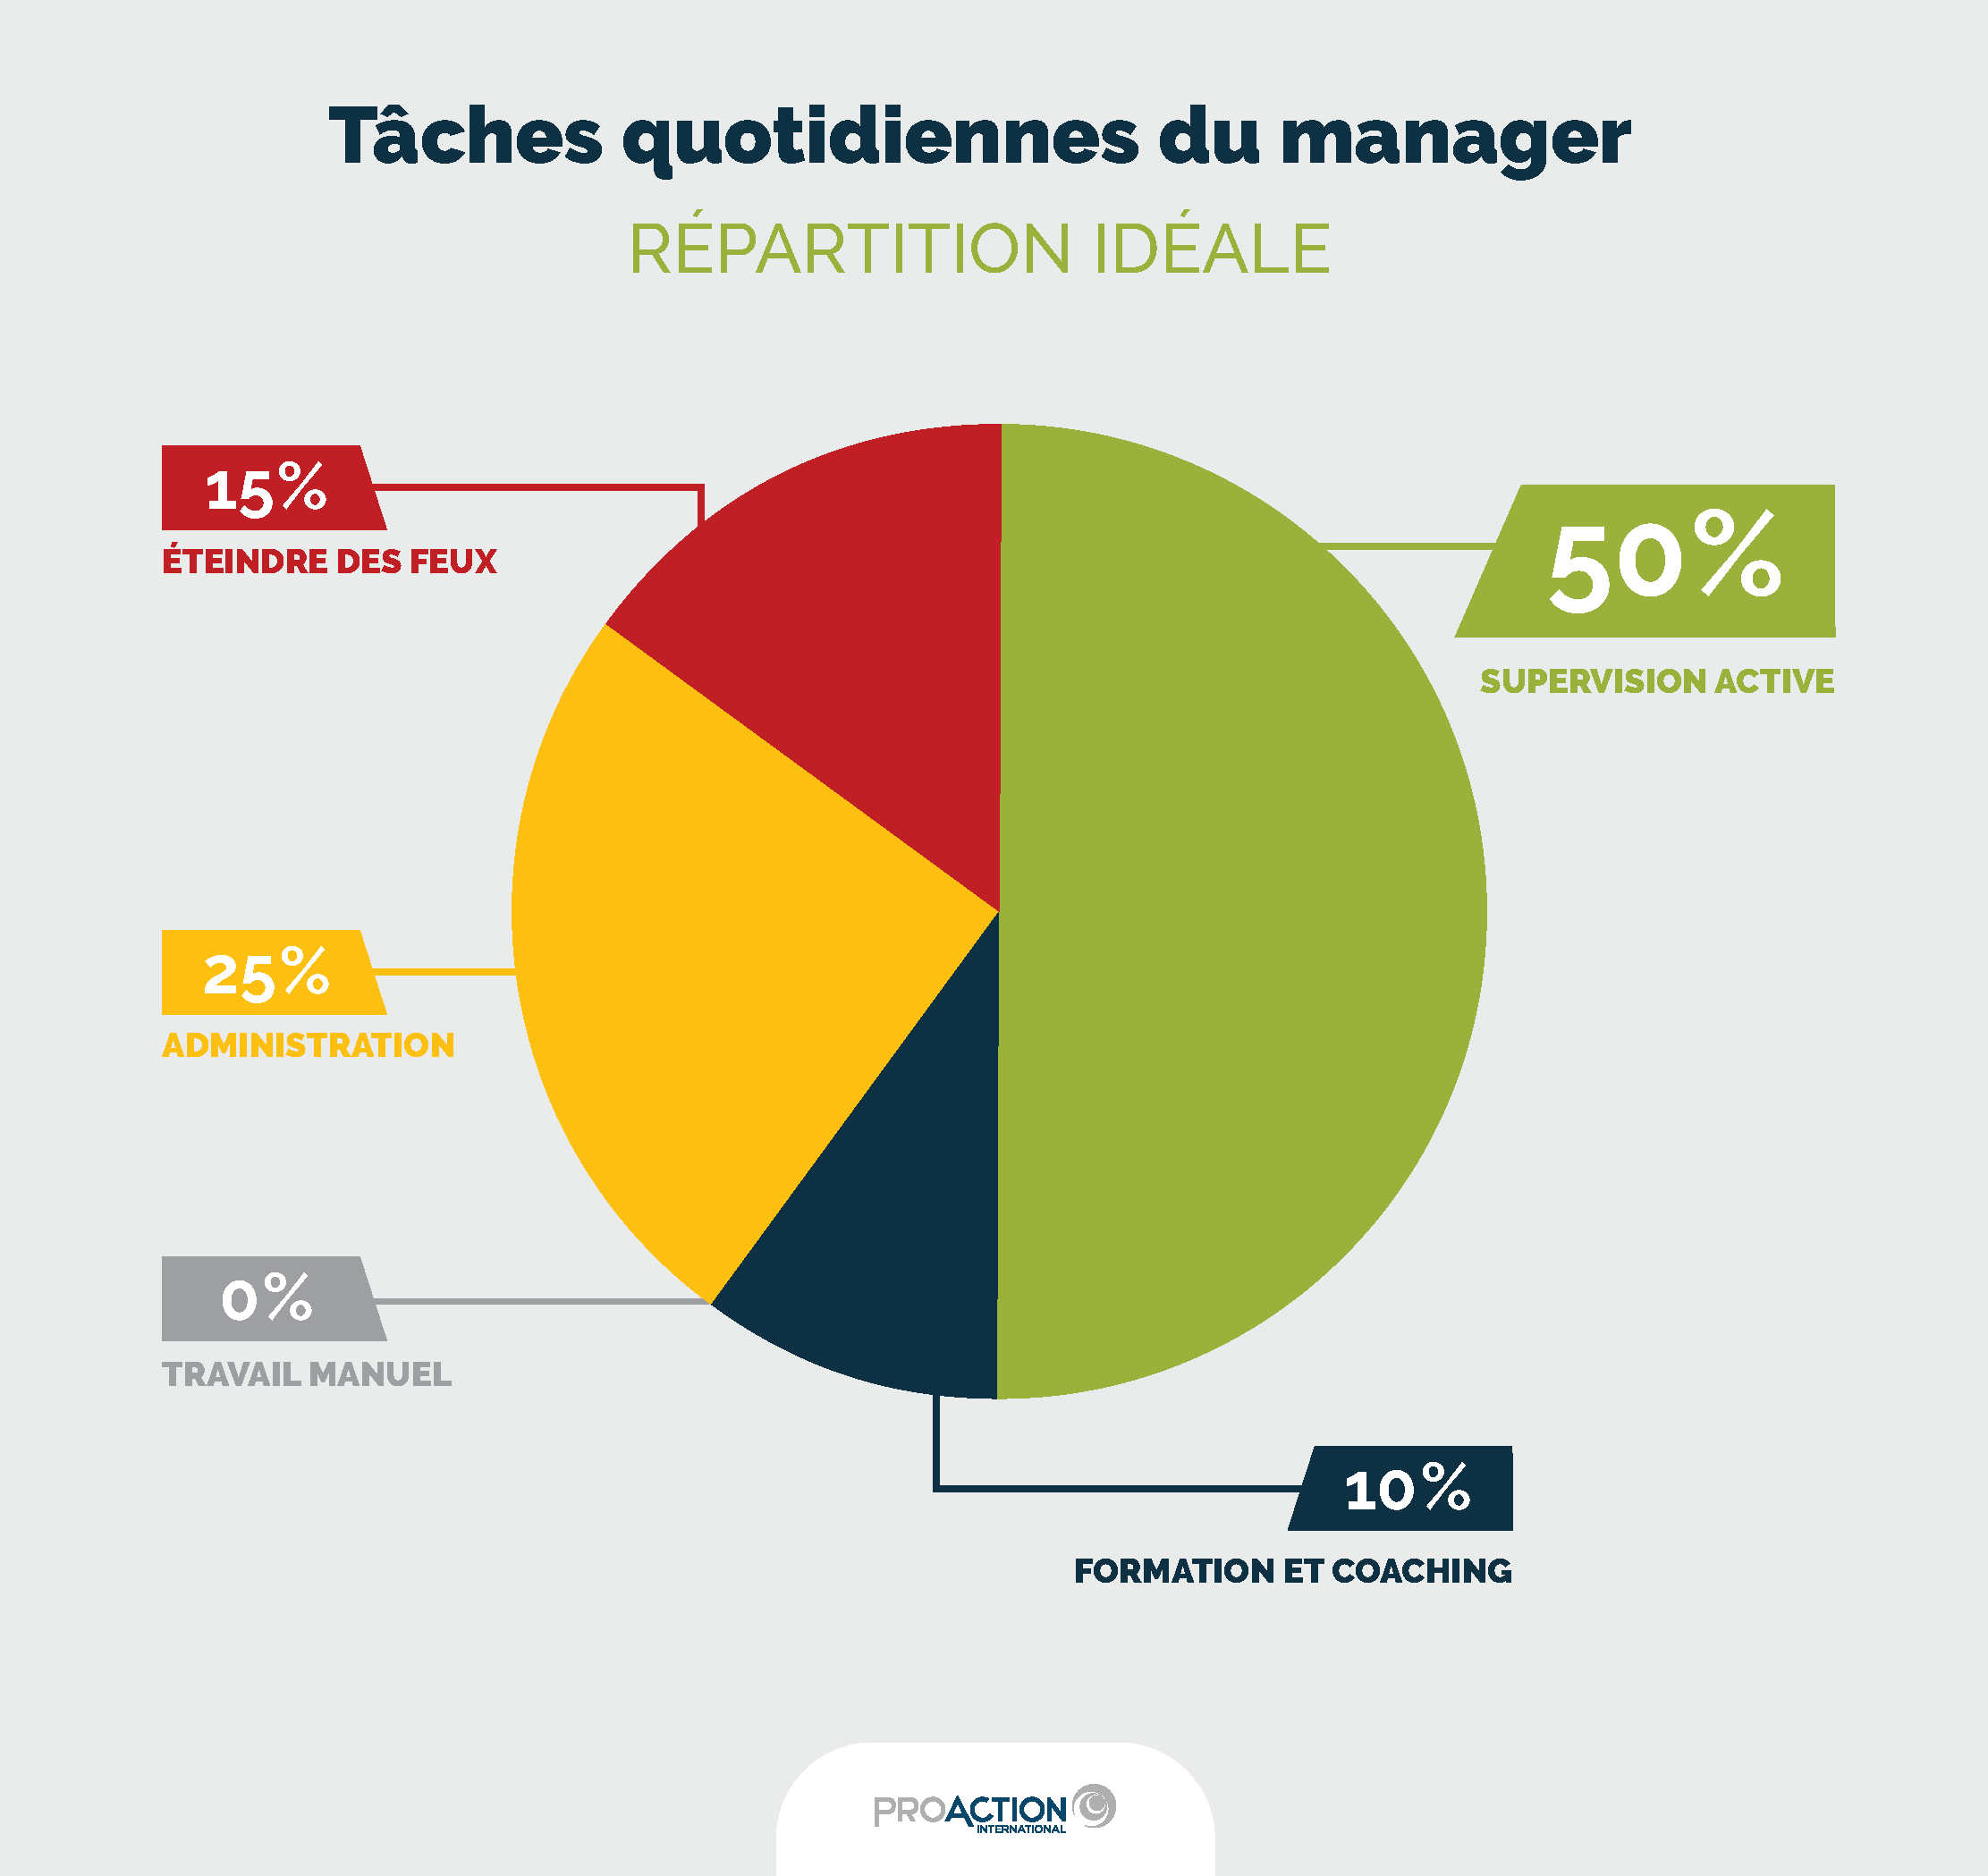 Infographie-distribution idéale_tâches des managers : 50% supervision active, 10% formation et coaching, 25% administration, 15% éteindre des feux, 0% travail manuel